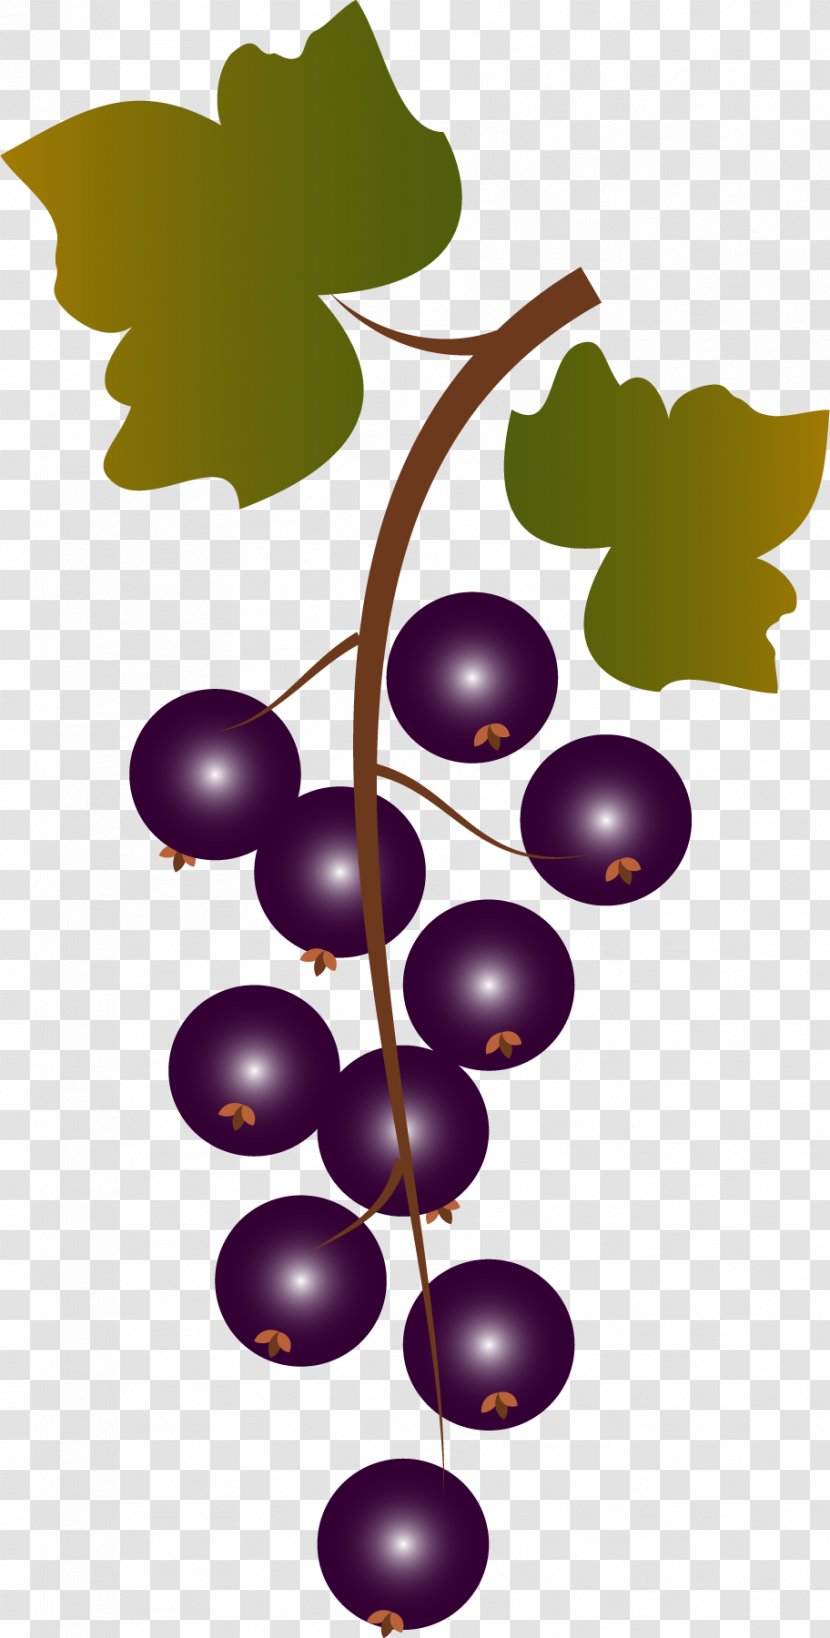 Grape Fruit Purple - Gratis - A Bunch Of Grapes Transparent PNG